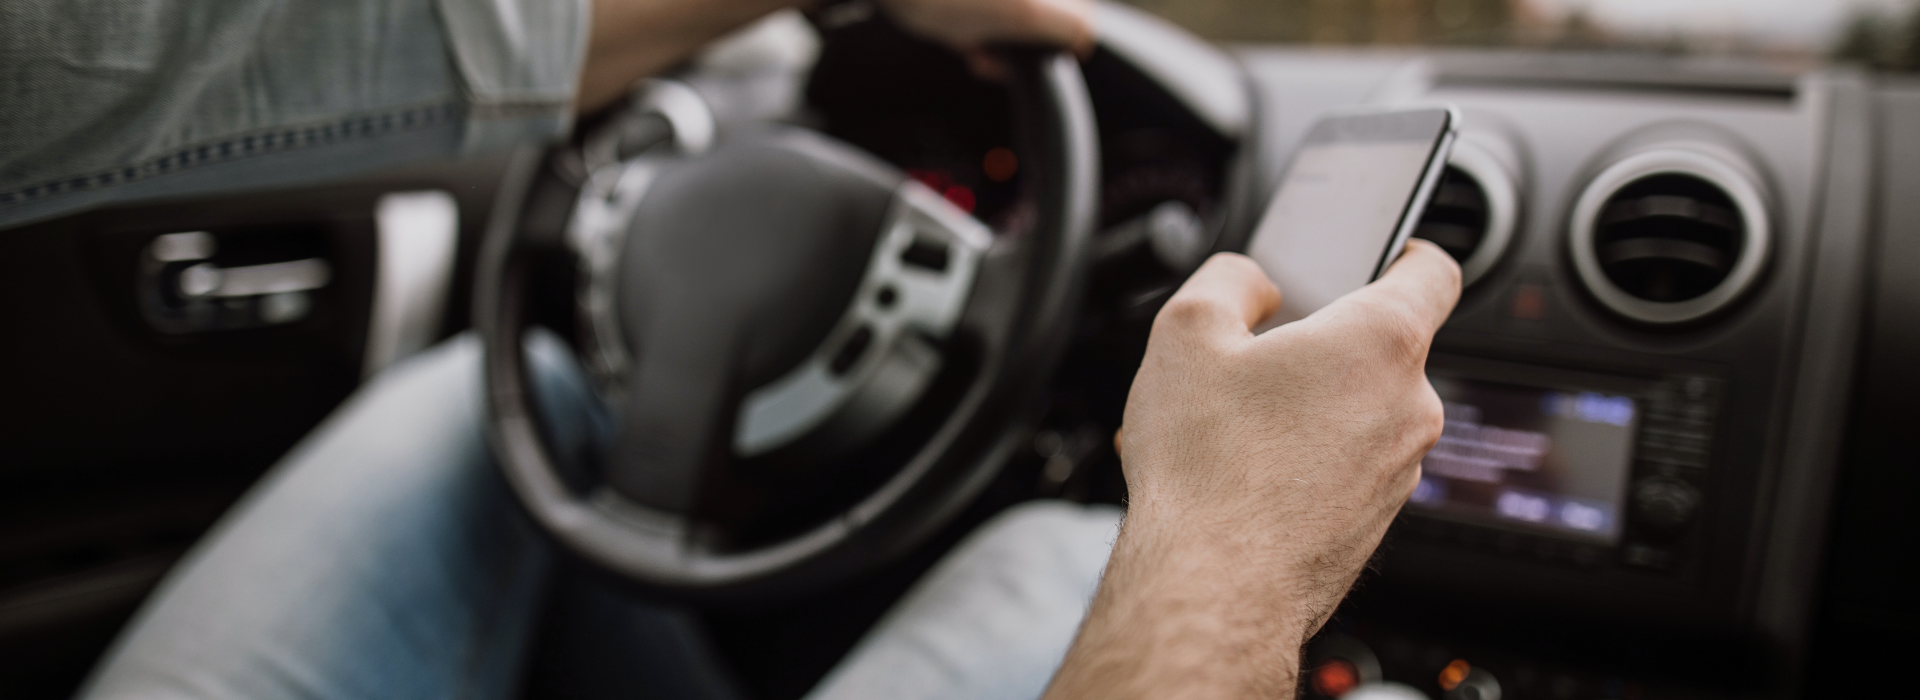 Man driving while texting may cause a car crash.